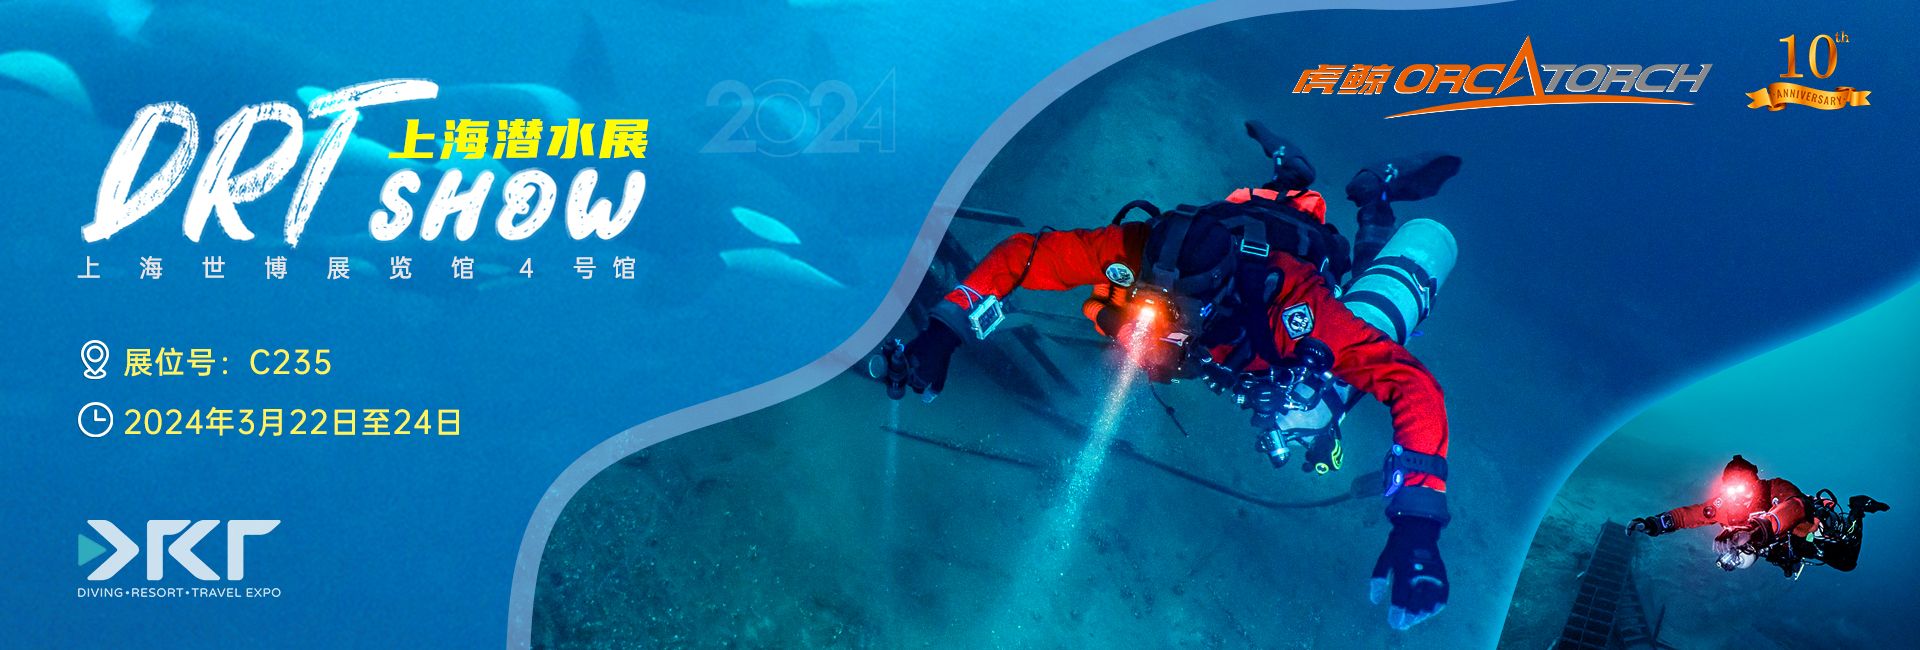 2024 DRT SHOW上海国际潜水展